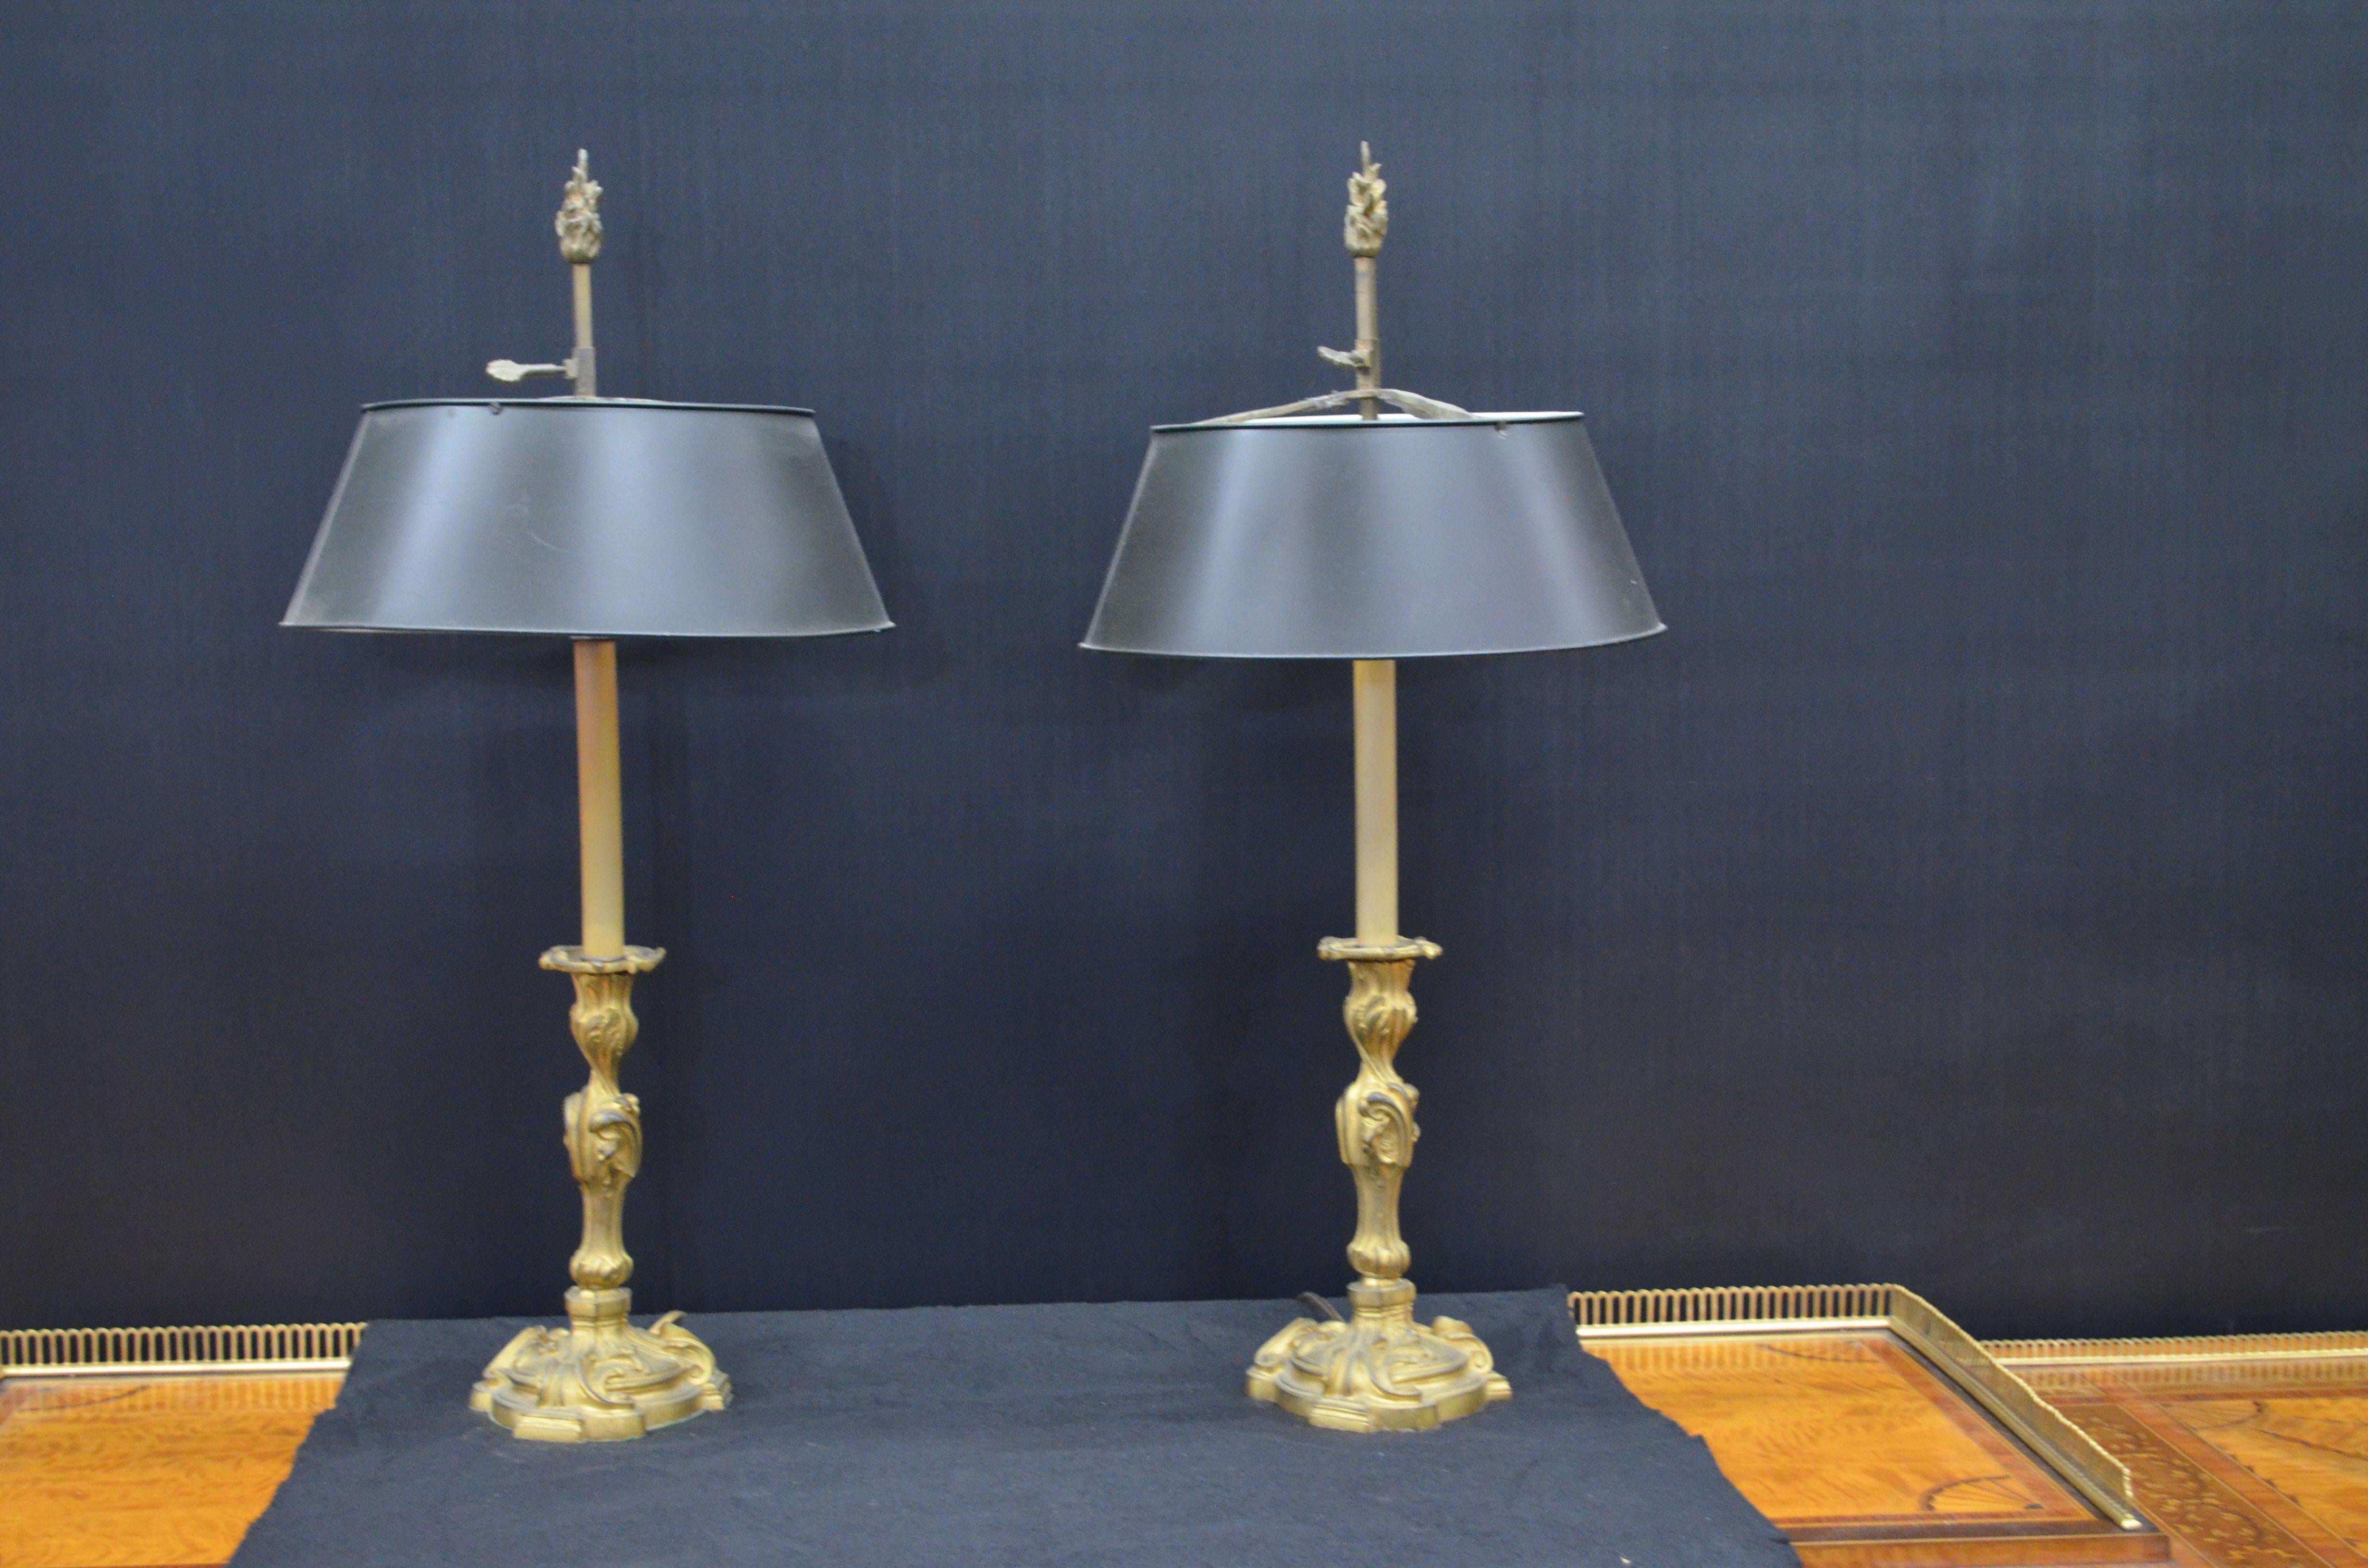 Paire de chandeliers en bronze Dore' de style Louis XV, montés en lampe, avec abat-jour en tôle bouillotte peinte en noir. Les chandeliers en bronze doré de style Louis XV ont une base surélevée circulaire triplement festonnée. Les tiges centrales